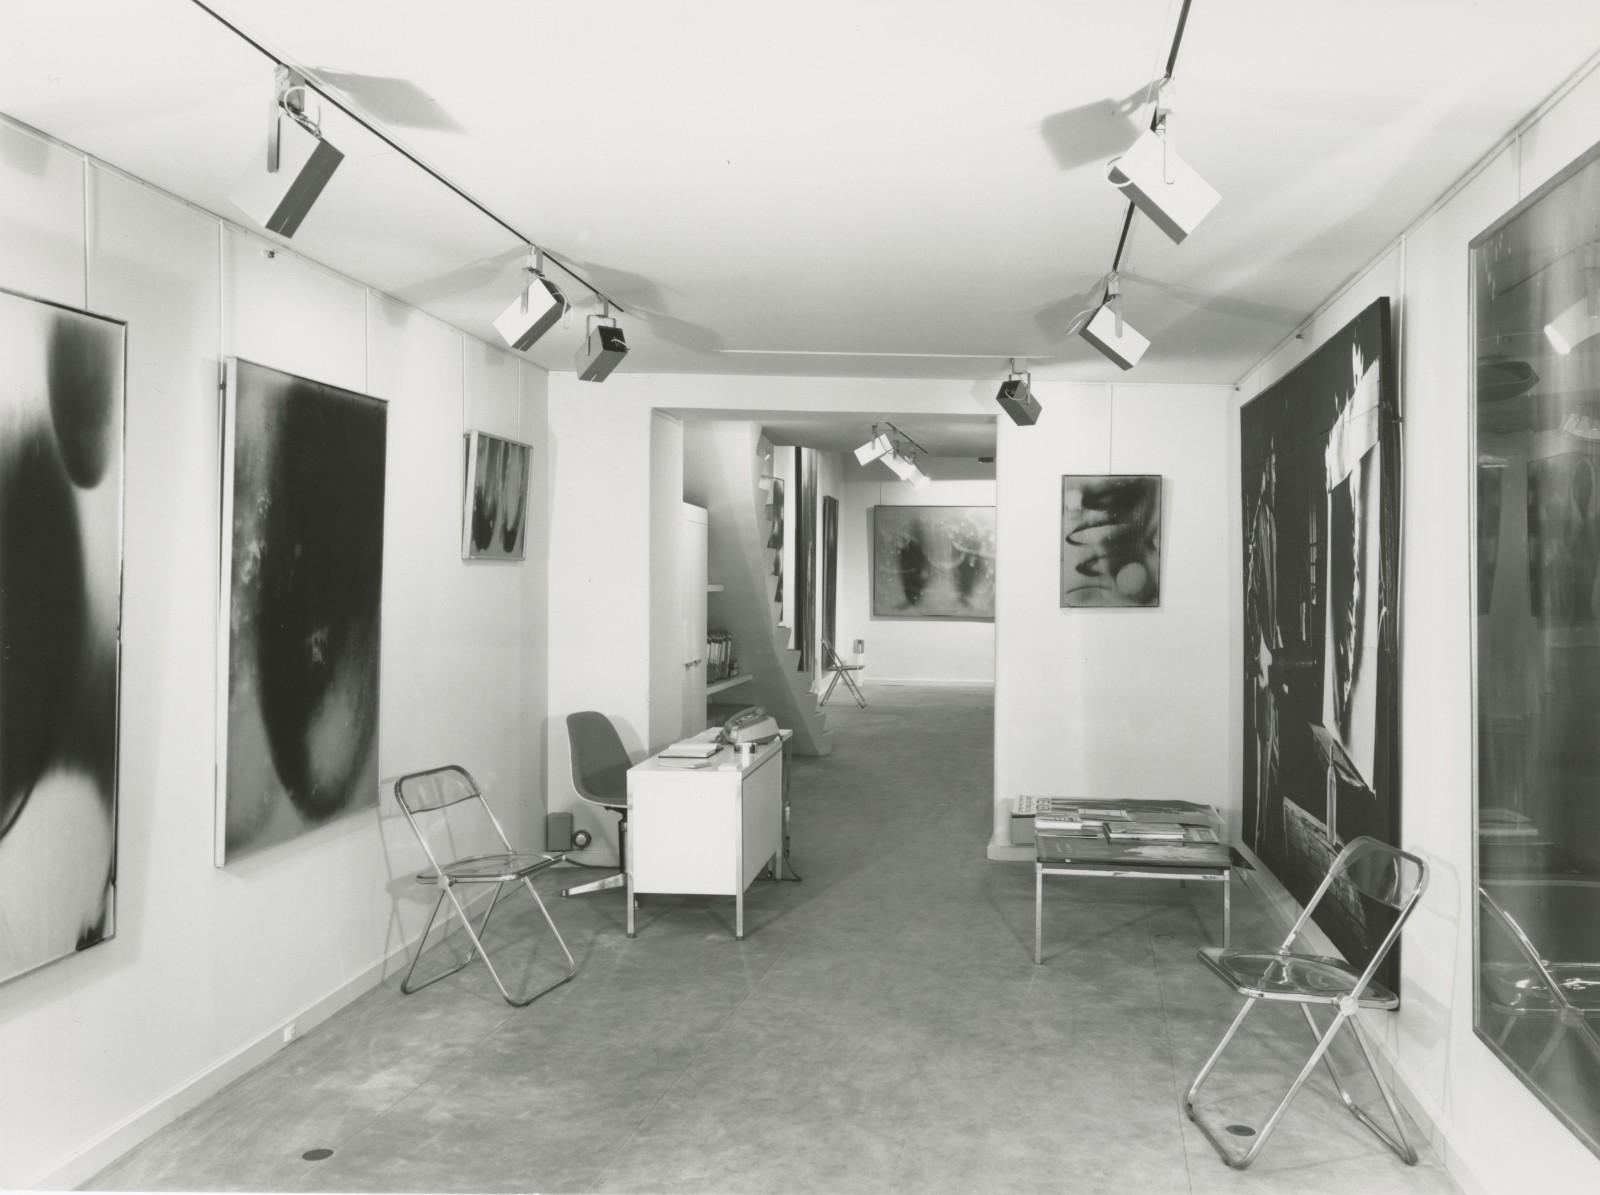 Vue de l'exposition, "Yves Klein, Feux", Galerie Karl Flinker, 1976